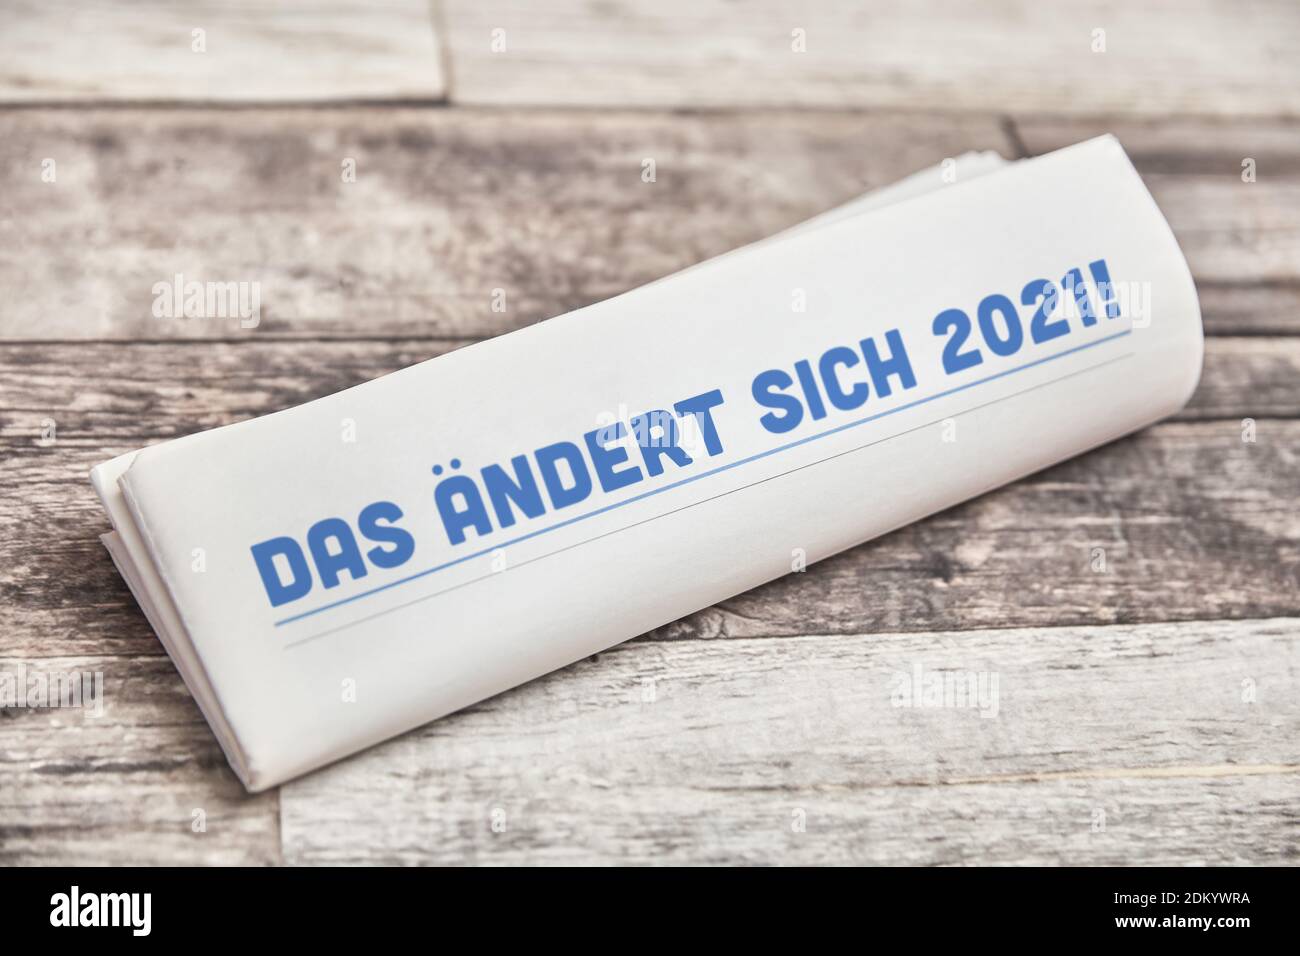 DAS ändert sich 2021 (allemand: Qui changera en 2021), il dit sur la première page d'un journal plié sur une table en bois Banque D'Images